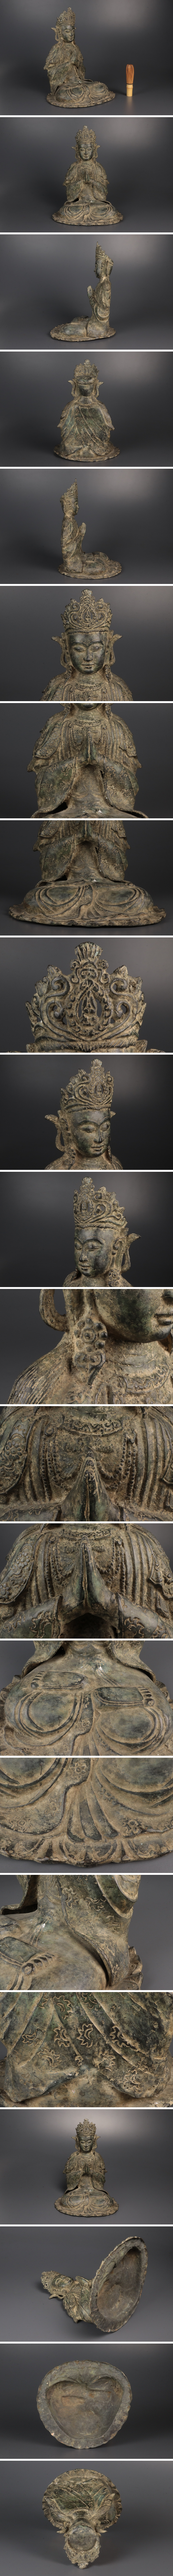 【通販安い】仏教美術 銅製 仏像 坐像 細密彫刻 置物 銅器 高さ:約32cm 骨董品 美術品 7929scy 仏像